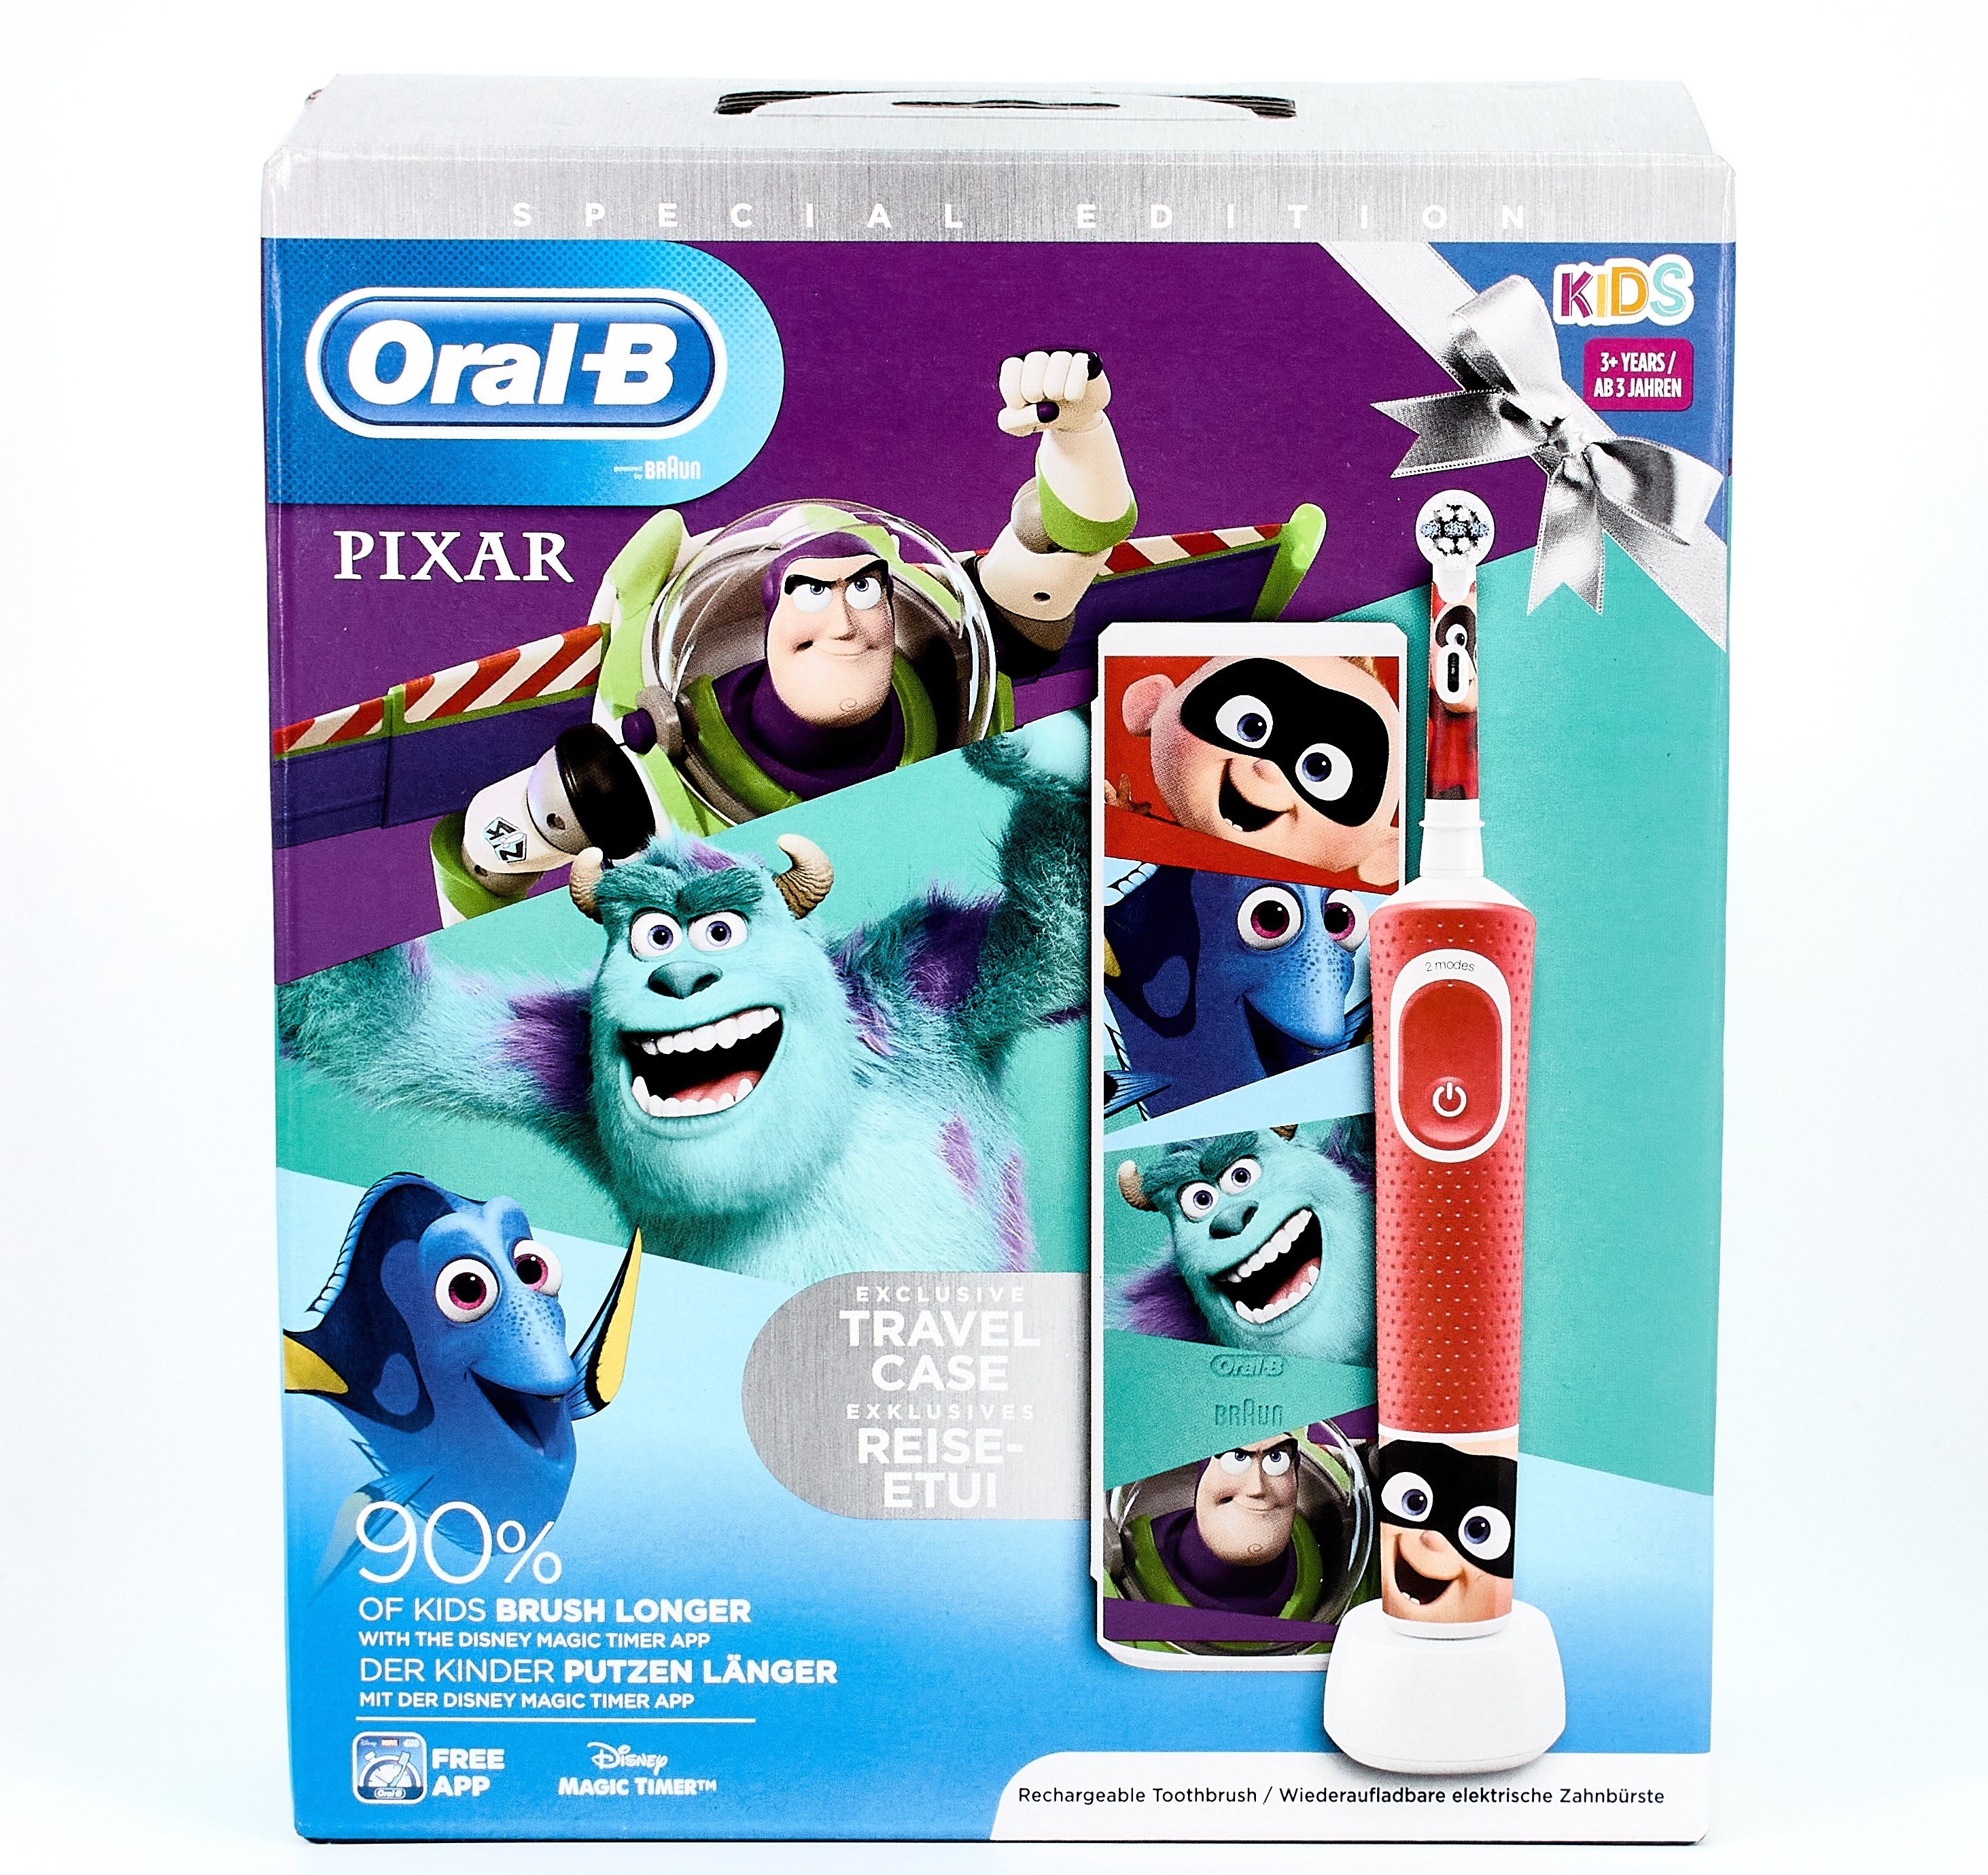 Comprar Oral B Cepillo Eléctrico Infantil Pixar al mejor precio